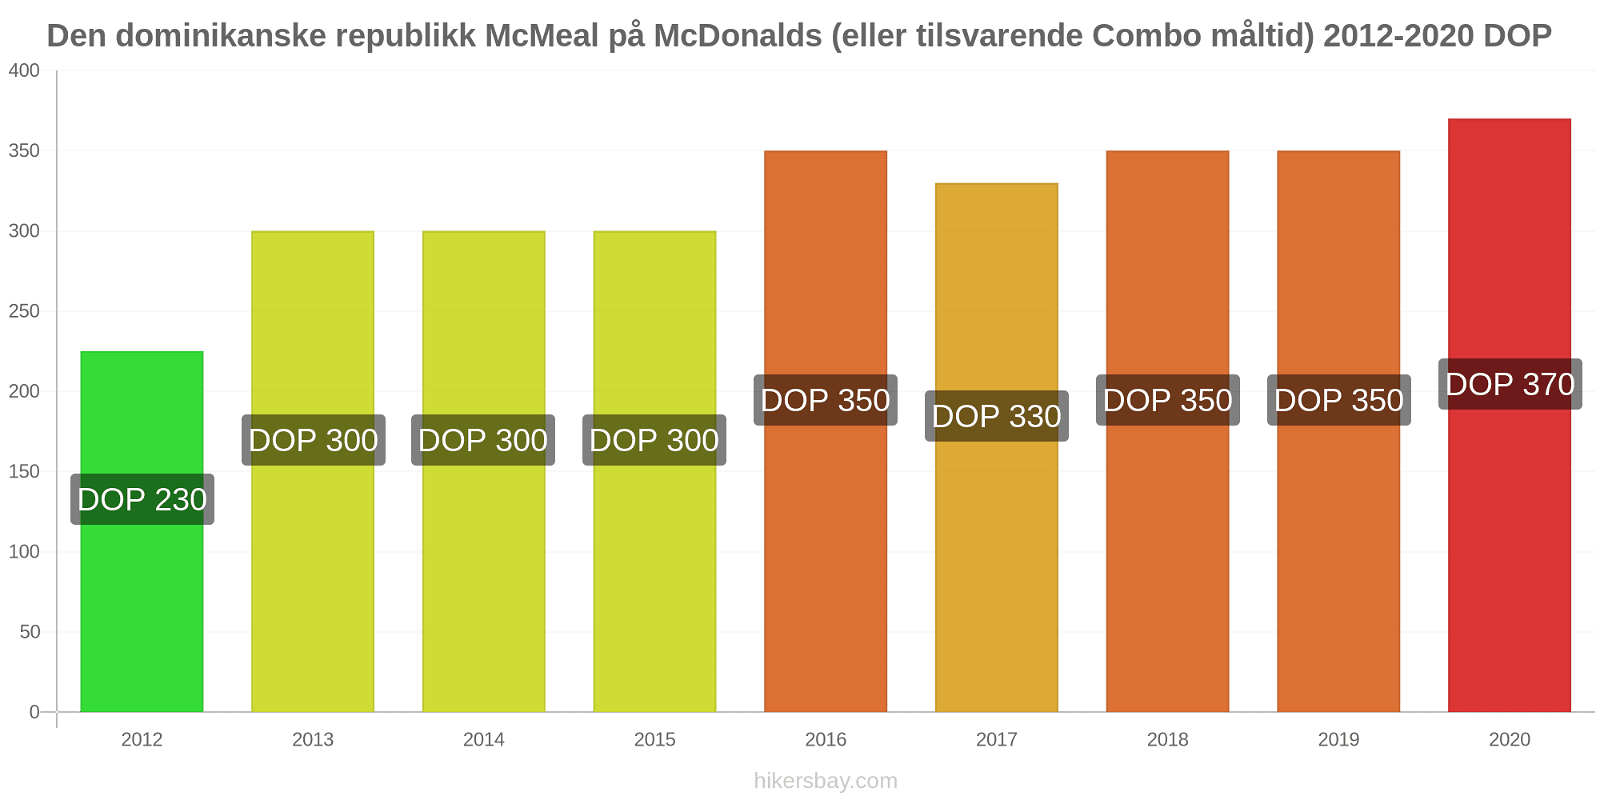 Den dominikanske republikk prisendringer McMeal på McDonalds (eller tilsvarende Combo måltid) hikersbay.com